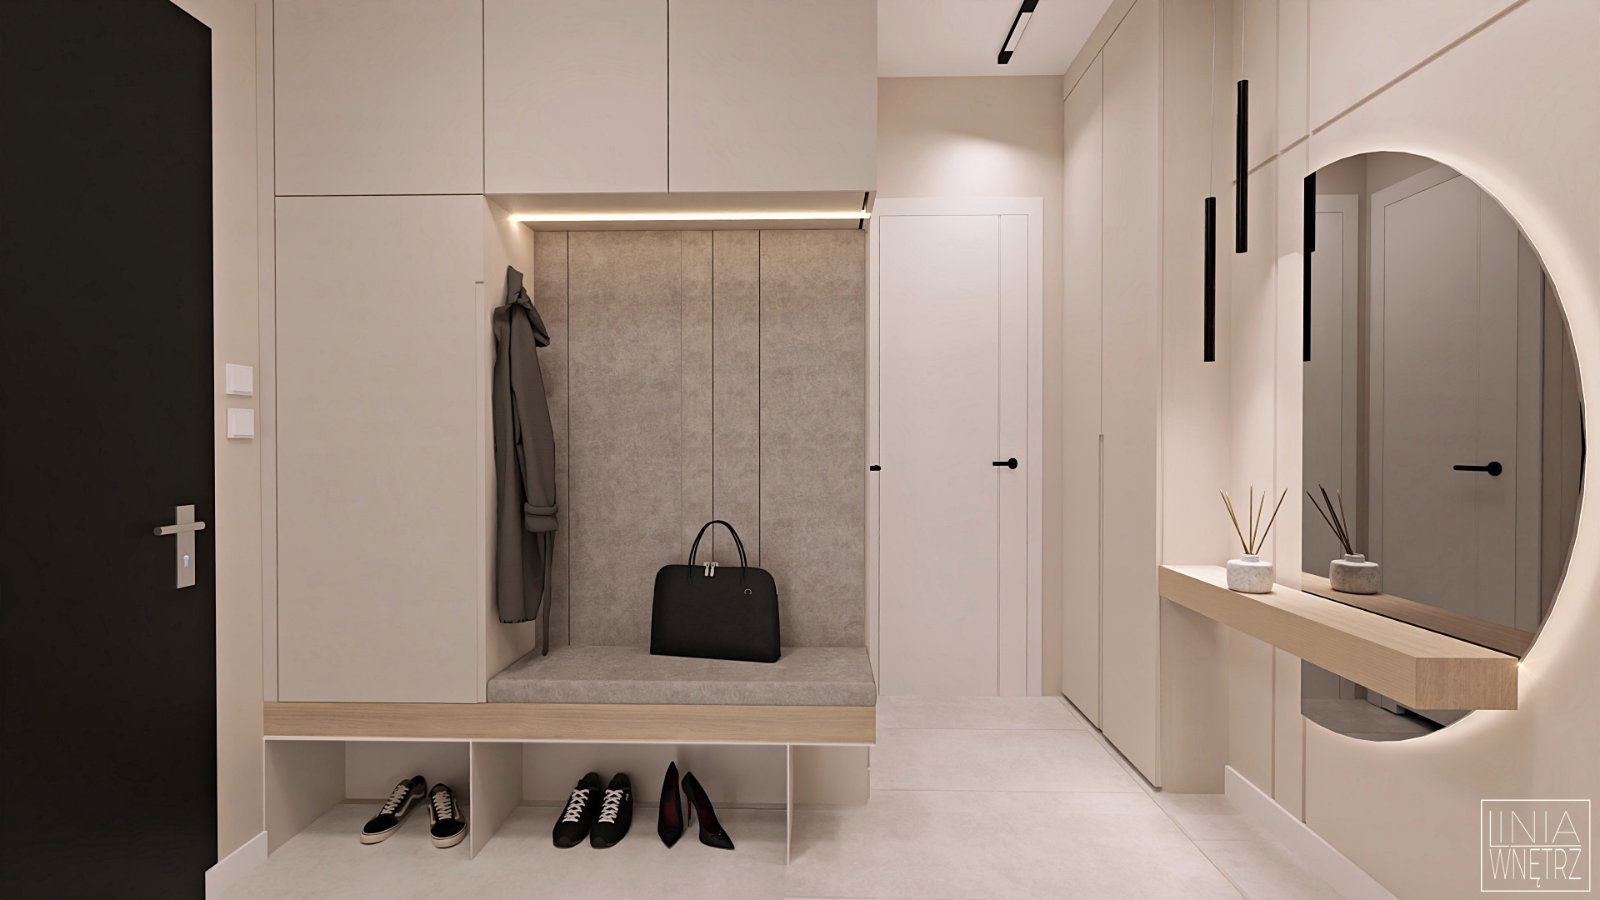 korytarz-przedpokoj-nowoczesny-jasny-minimalistyczny-szafa-z-siedziskiem-tapicerowanym-projekt-linia-wnetrz-bielsko-slask